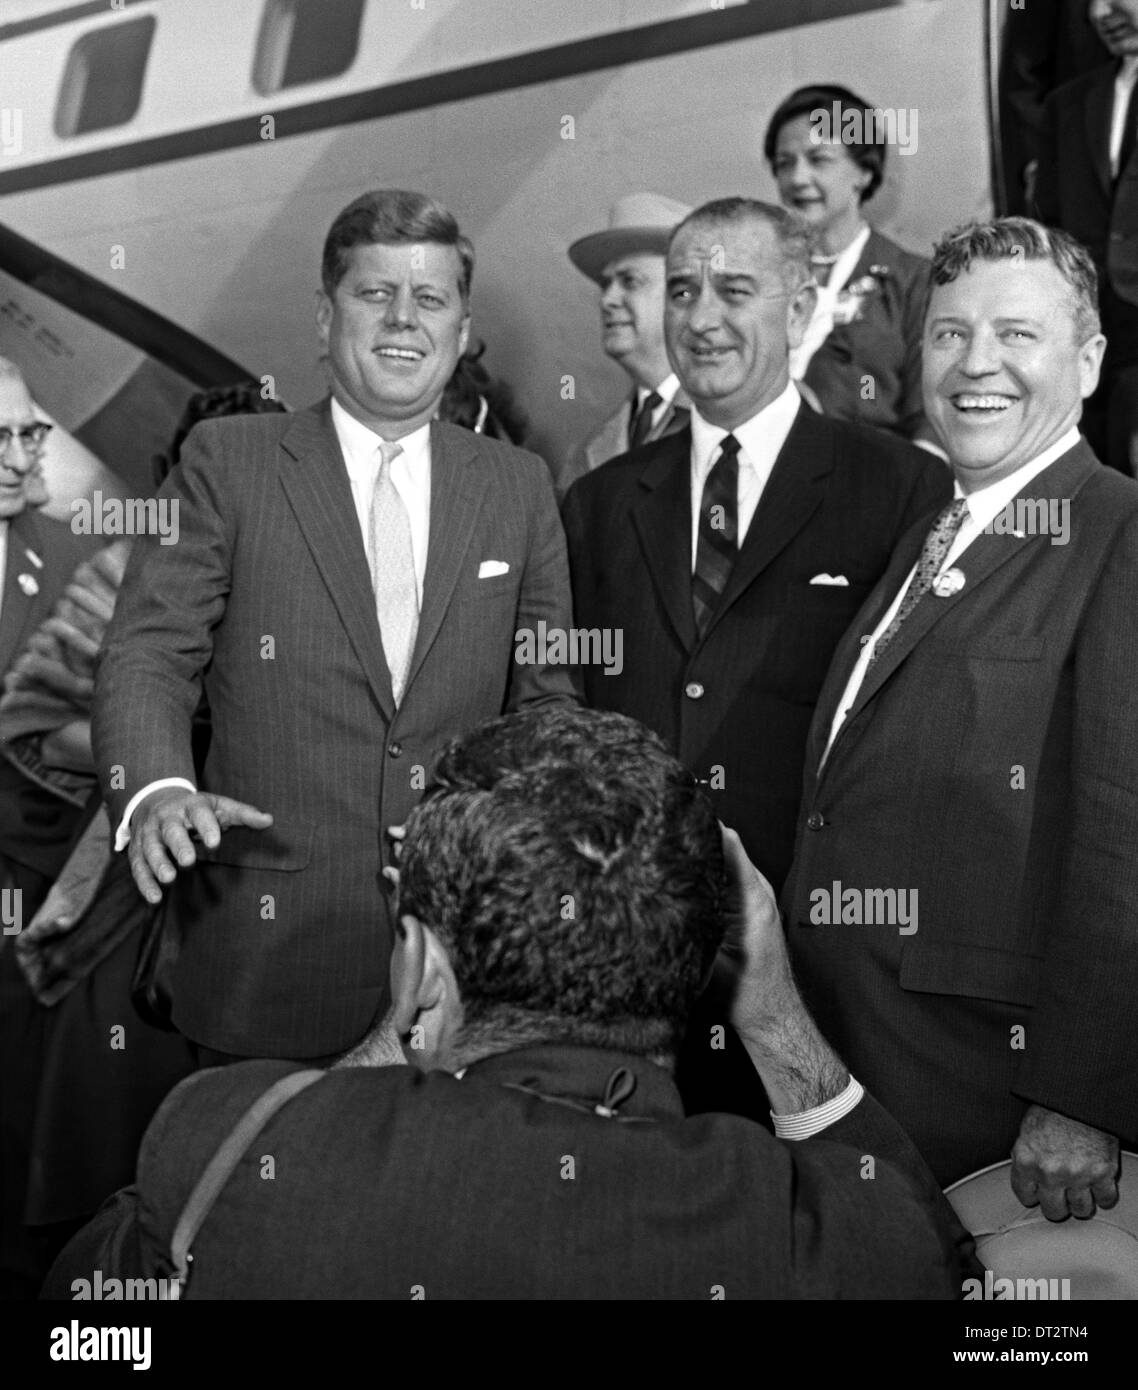 Le sénateur américain John F. Kennedy et Lyndon B. Johnson sénateur pour faire campagne dans l'élection présidentielle le 3 novembre 1960 à Wichita Falls, au Texas. La sénateur Ralph Yarborough est visible sur la droite. Banque D'Images